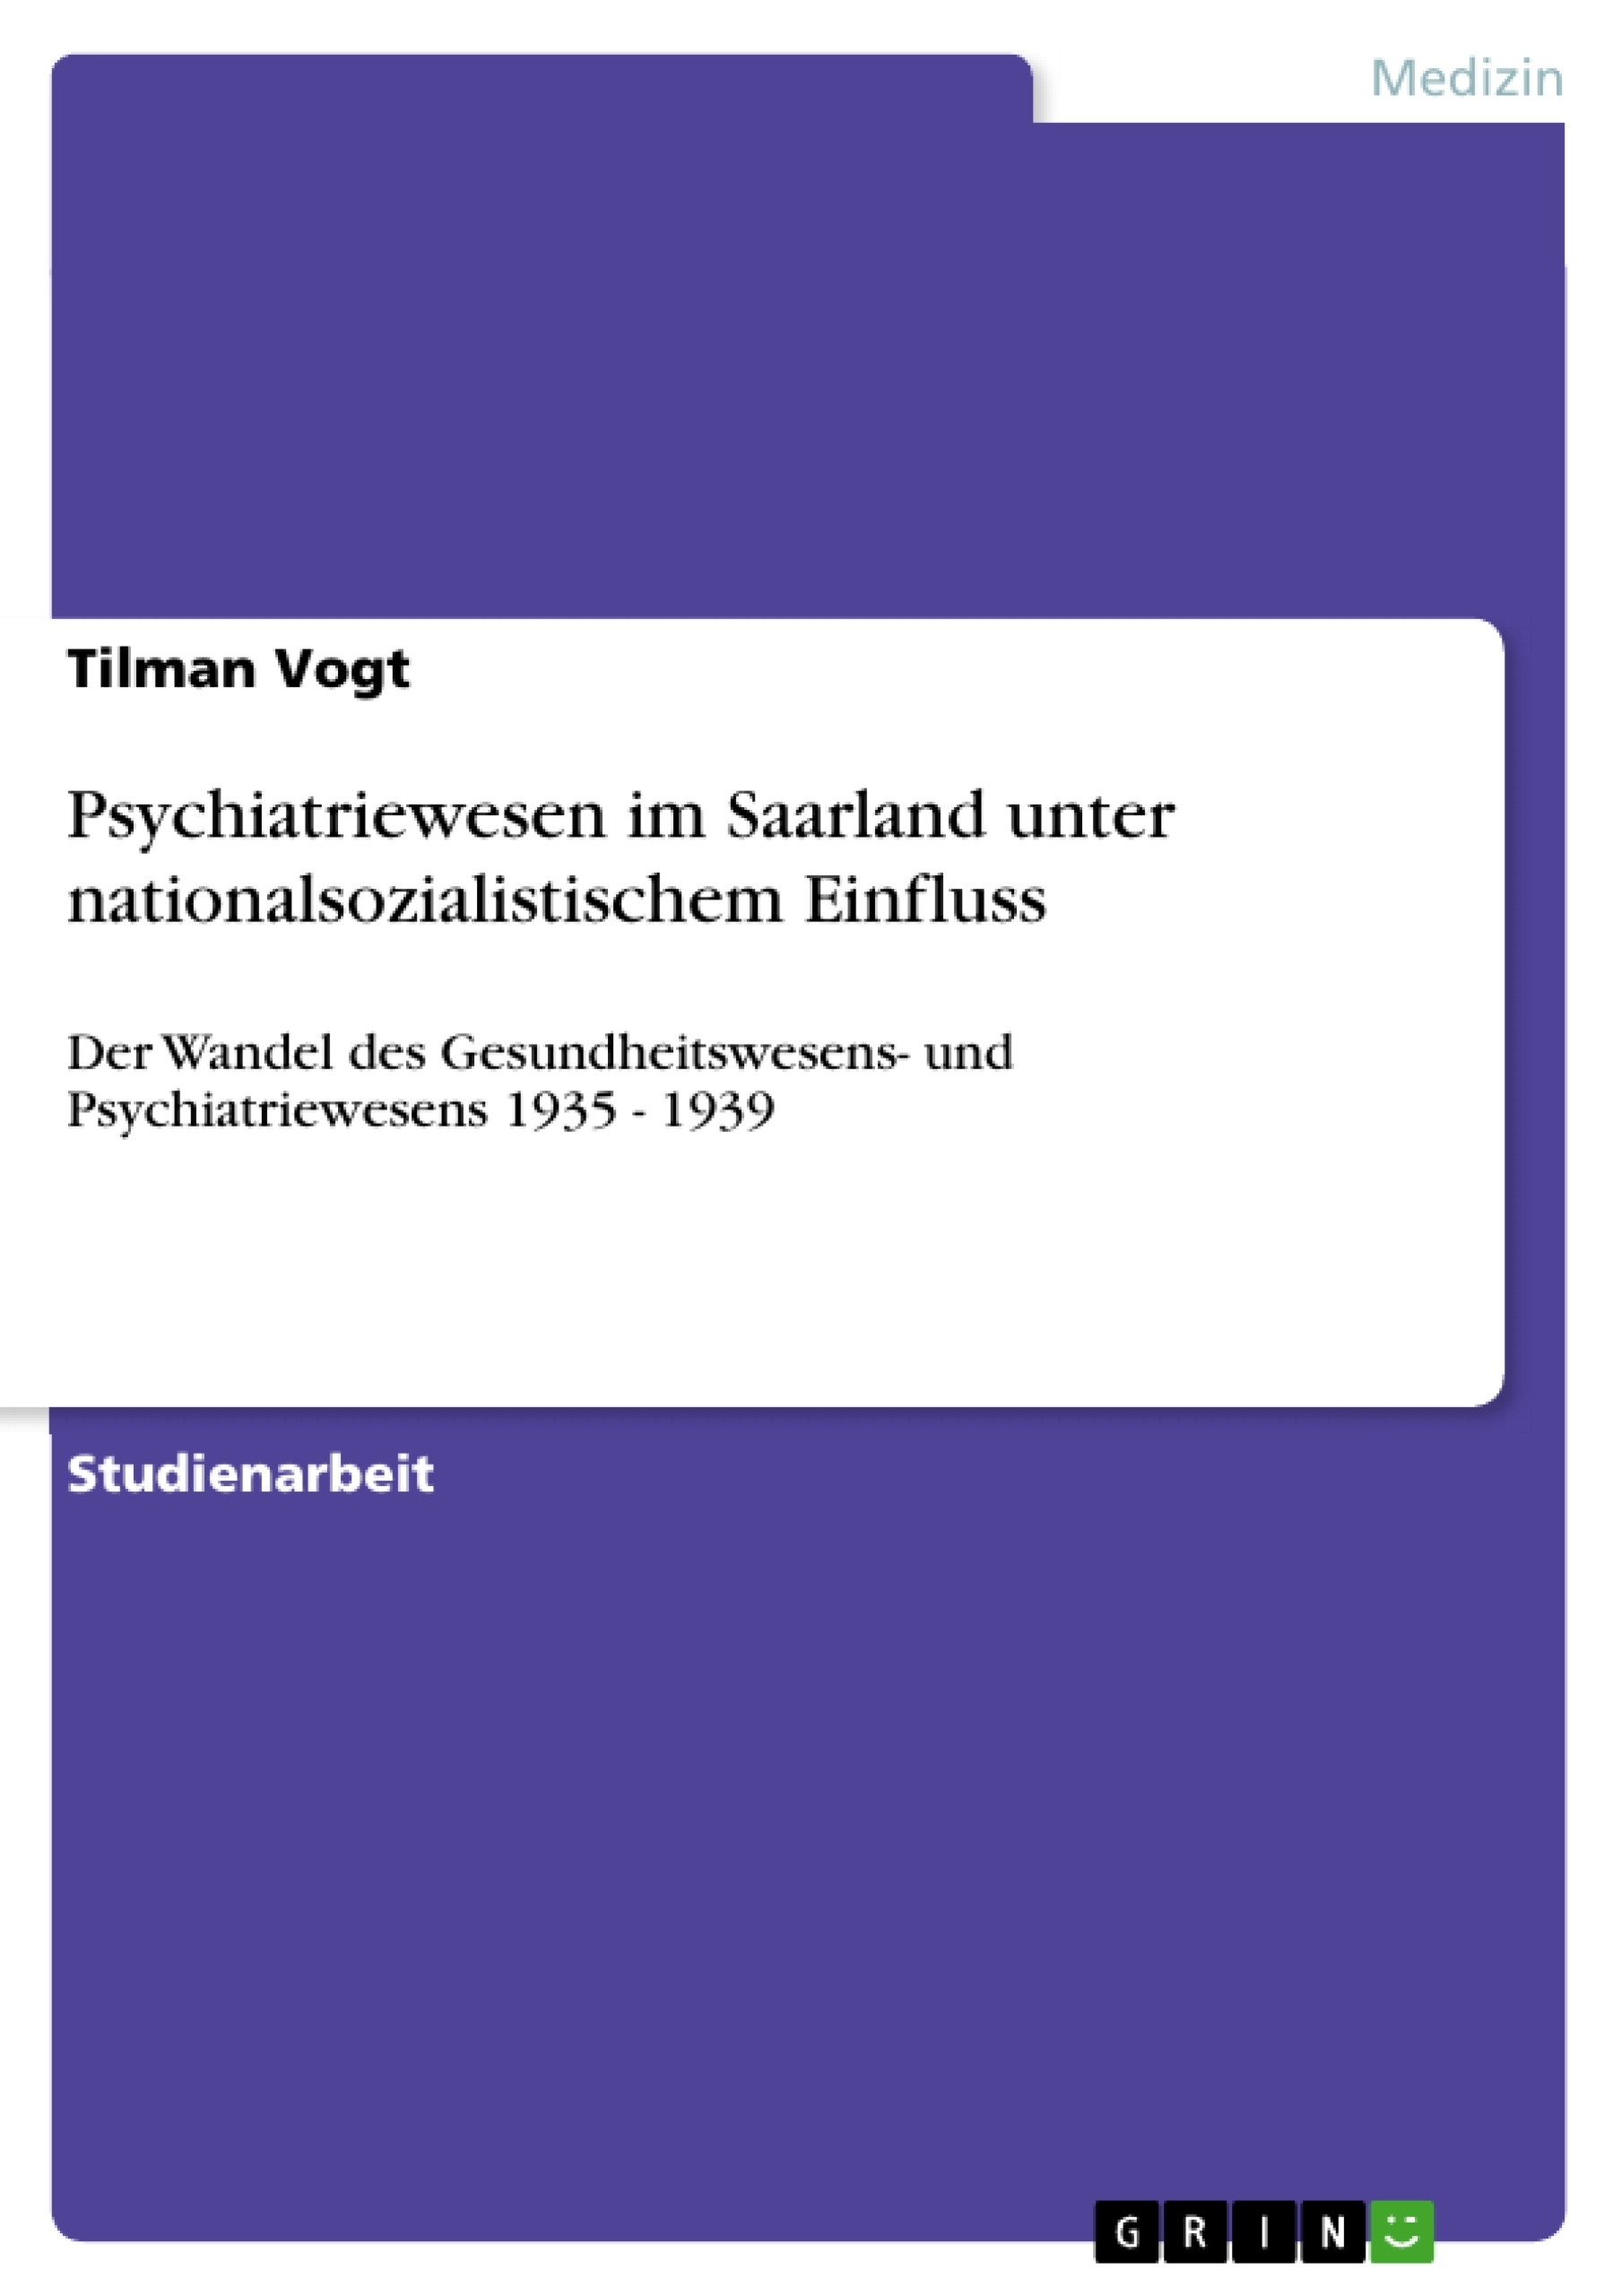 Titre: Psychiatriewesen im Saarland unter nationalsozialistischem Einfluss